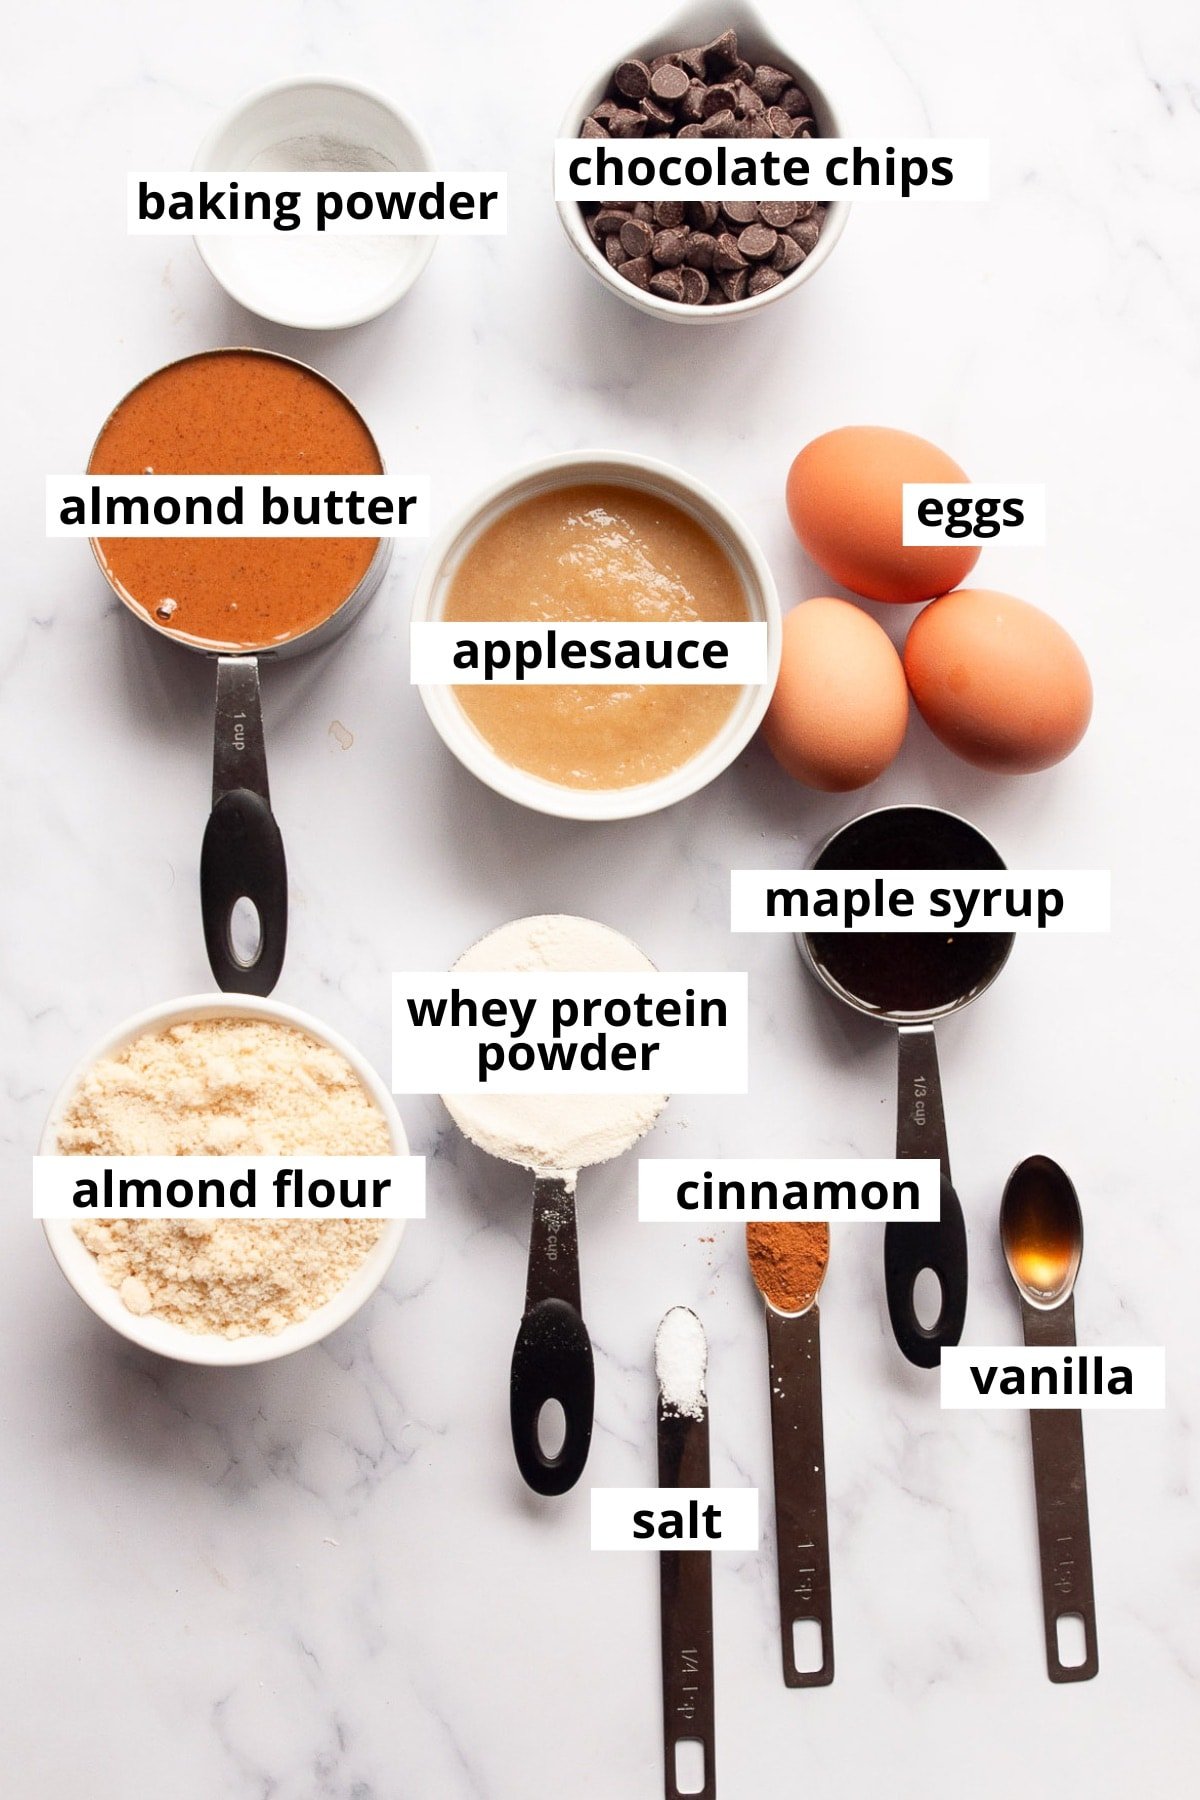 Almond butter, applesauce, chocolate chips, baking powder, eggs, maple syrup, whey protein powder, cinnamon, almond flour, vanilla, salt.